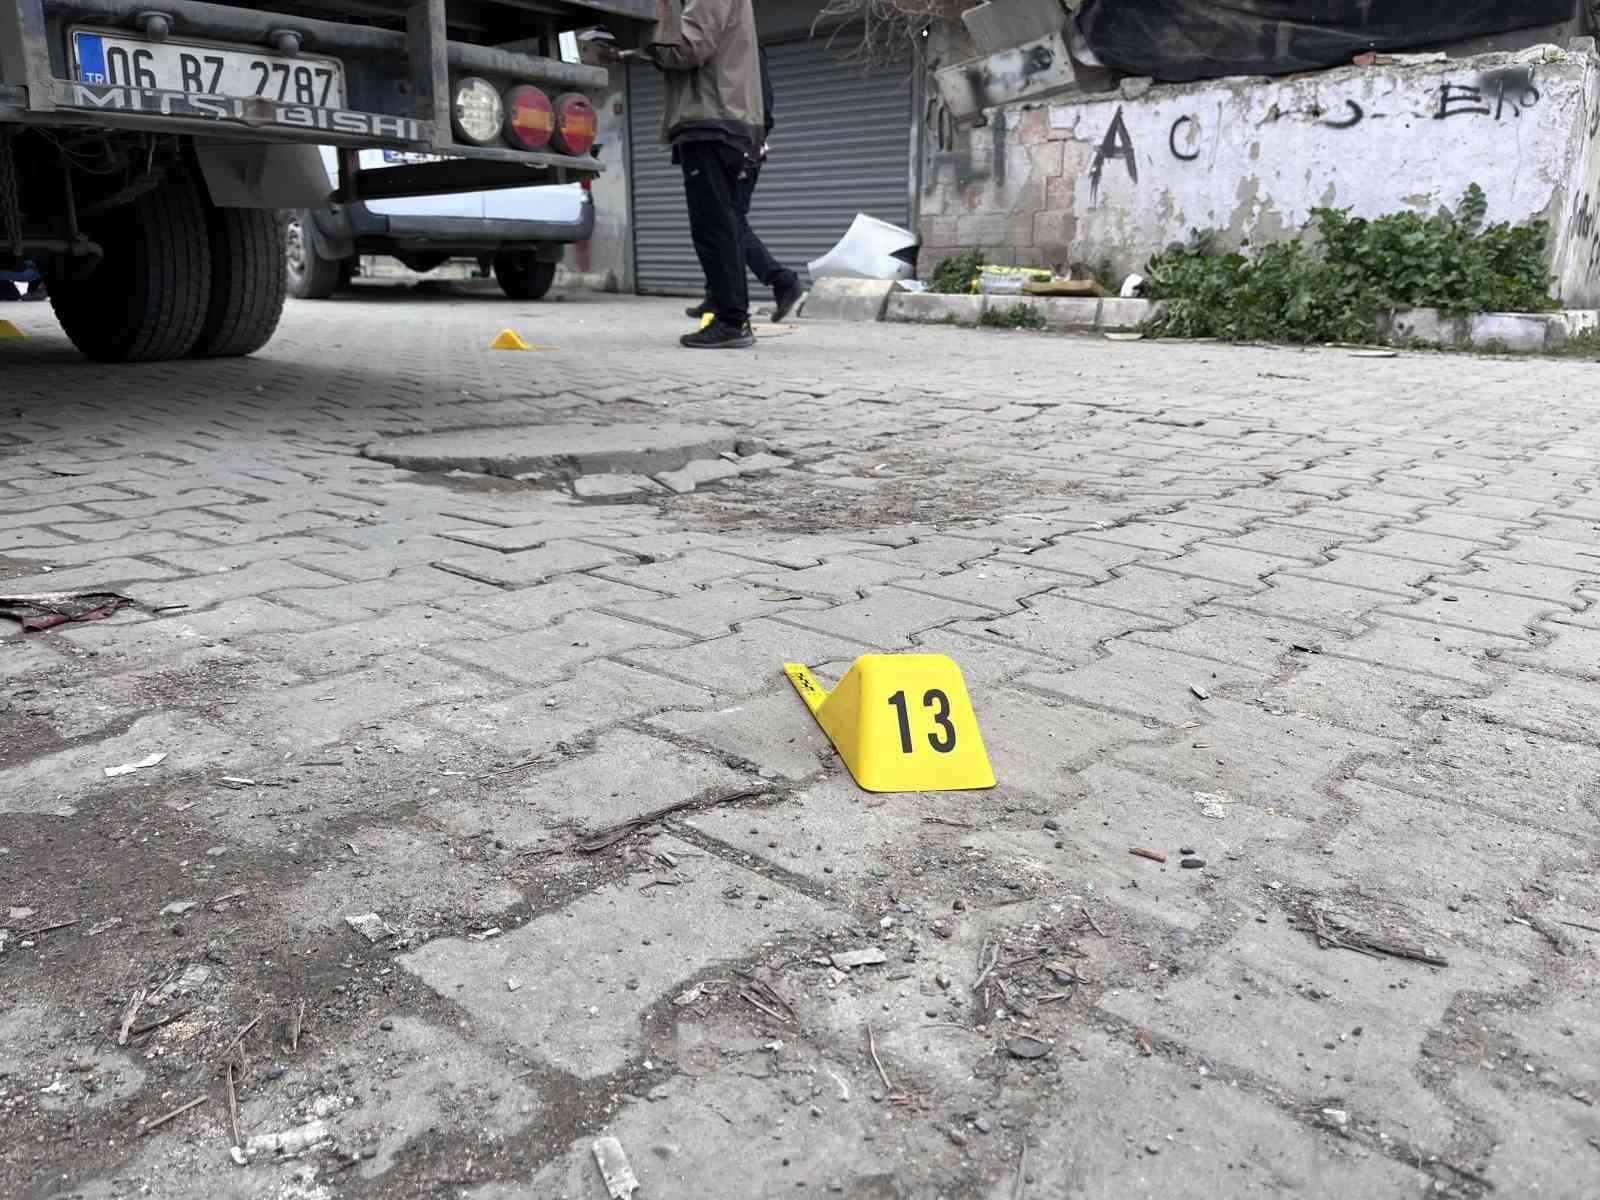 Başakşehir’de oto tamir dükkanına silahlı saldırı: 3 yaralı
